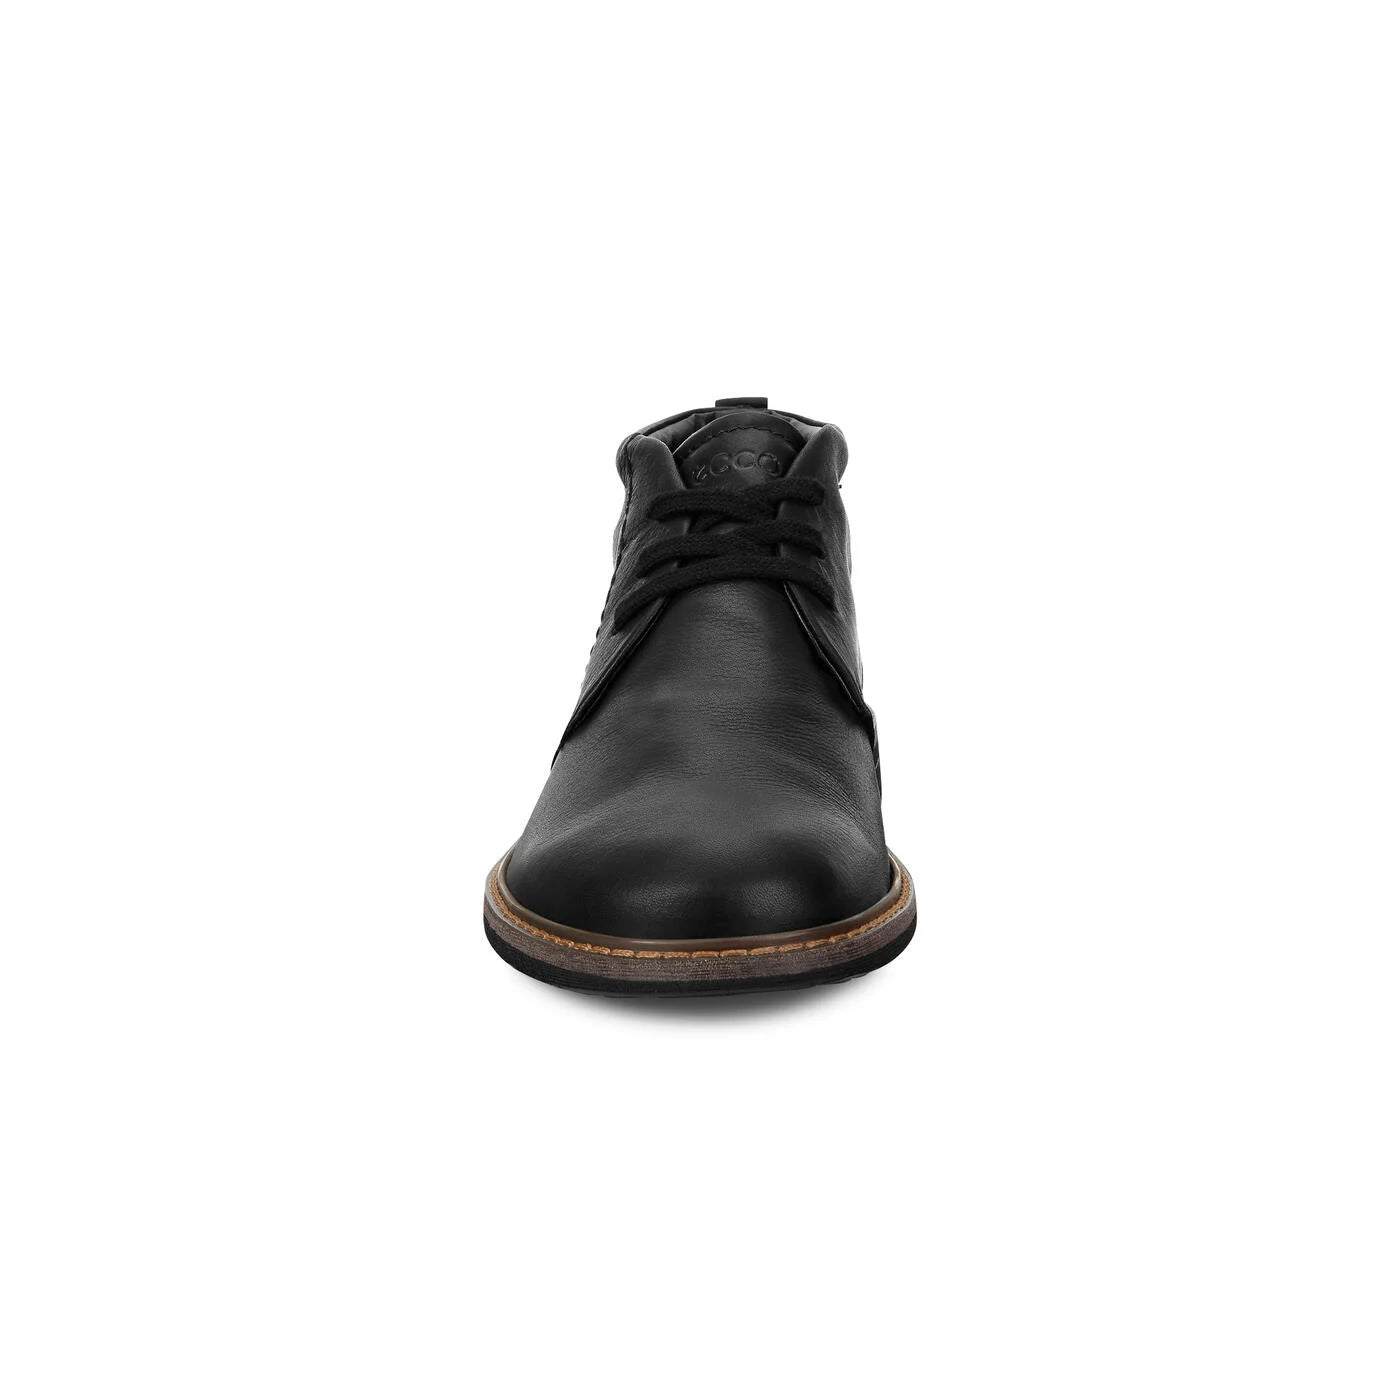 Ecco Men's Turn GORE-TEX Waterproof Ankle Boot - Black